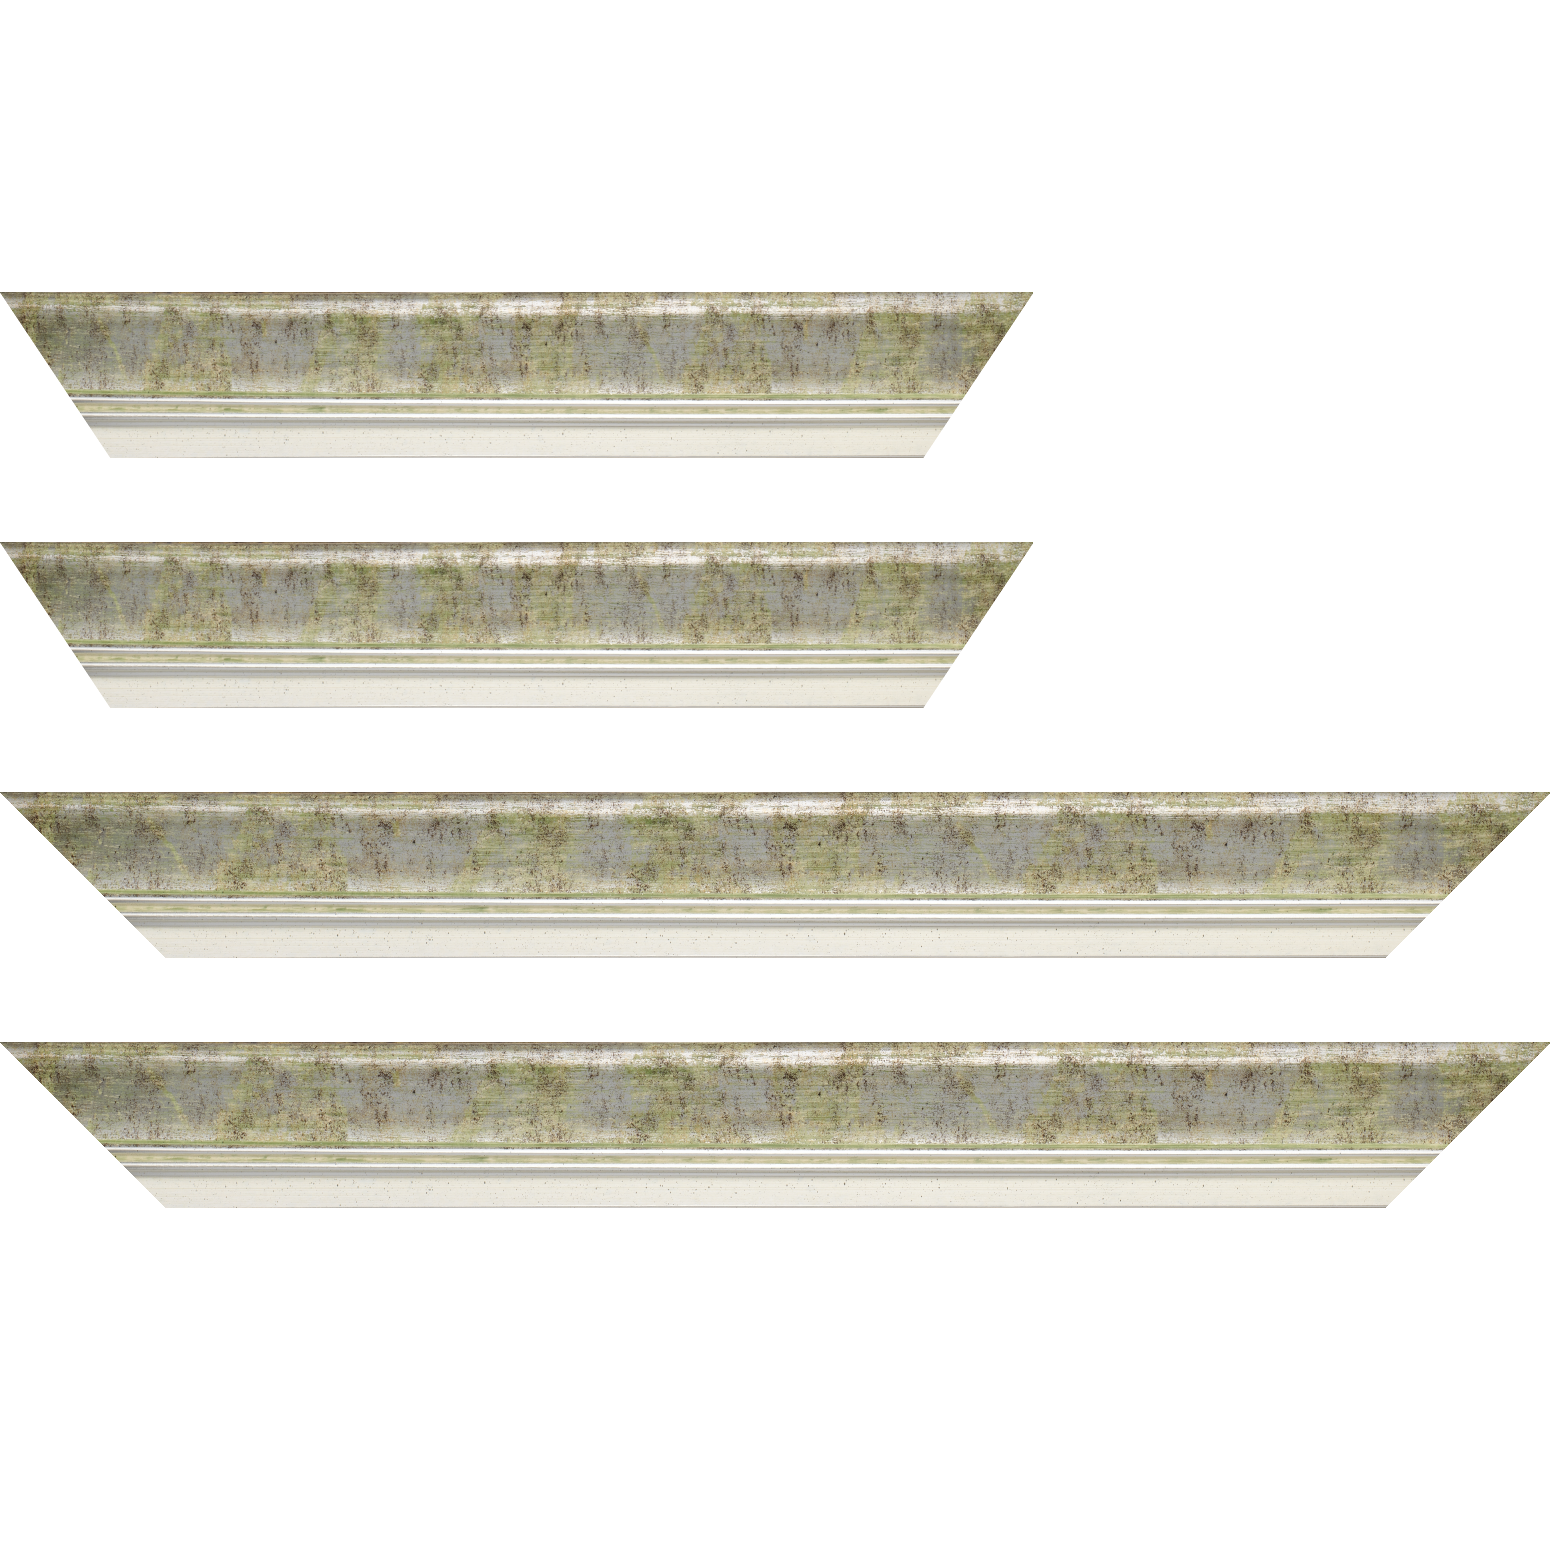 Baguette bois profil incurvé largeur 5.7cm de couleur vert fond argent marie louise blanche mouchetée filet argent intégré - 84.1x118.9